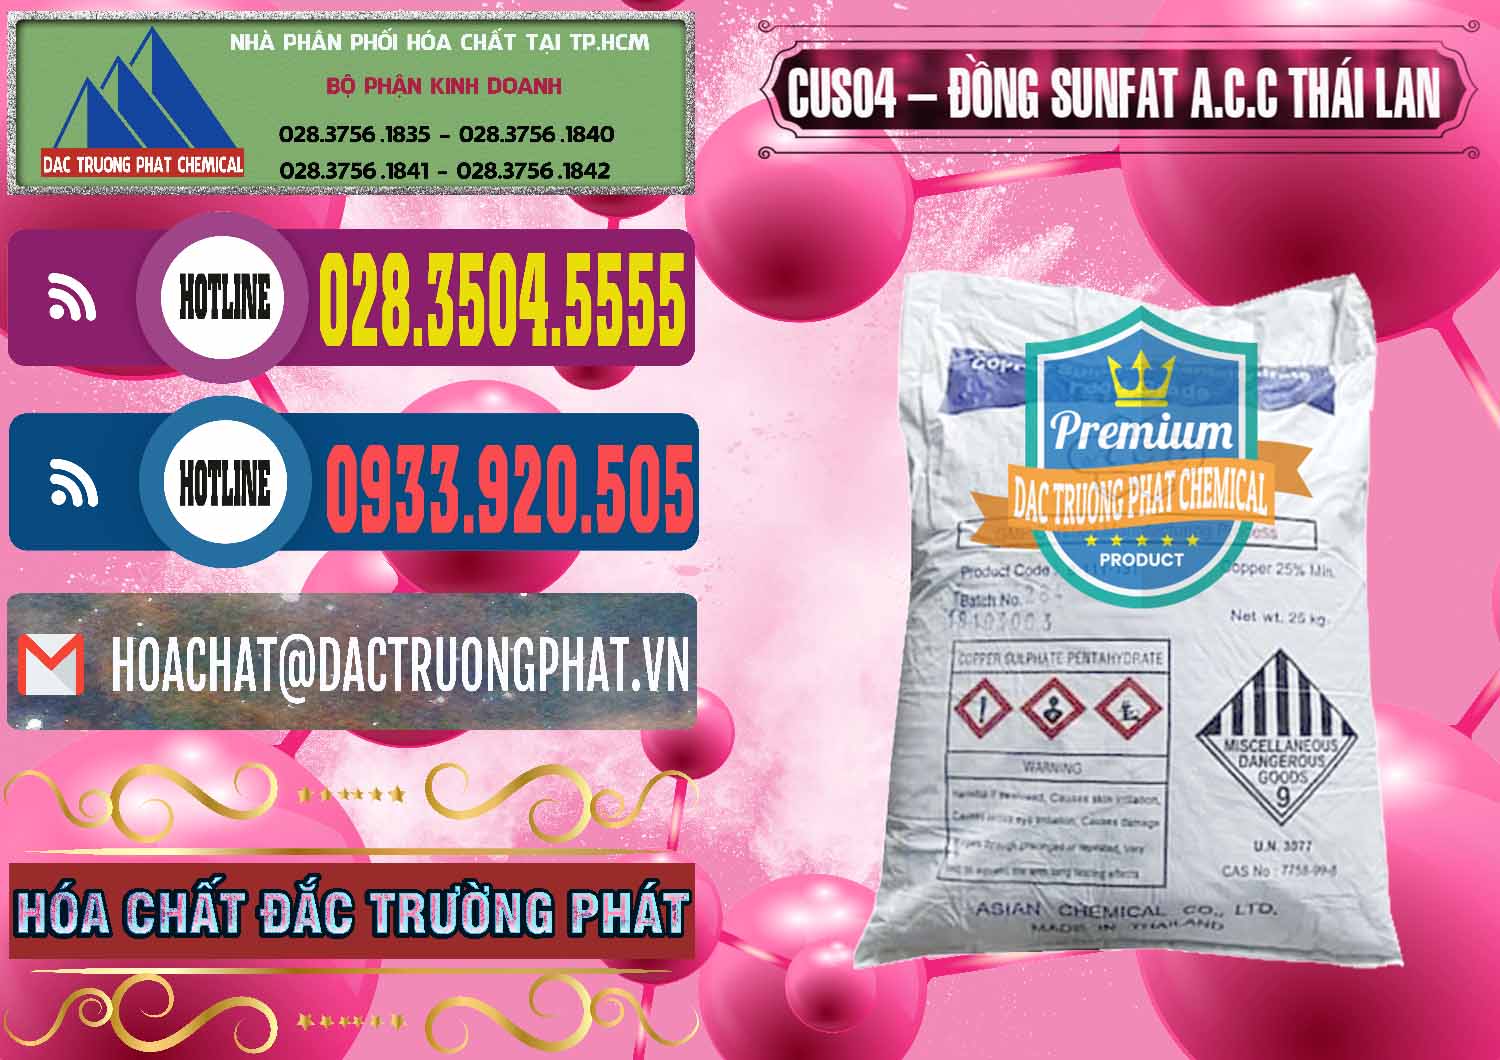 Nơi chuyên kinh doanh - bán CuSO4 – Đồng Sunfat A.C.C Thái Lan - 0249 - Cty cung cấp và bán hóa chất tại TP.HCM - muabanhoachat.com.vn